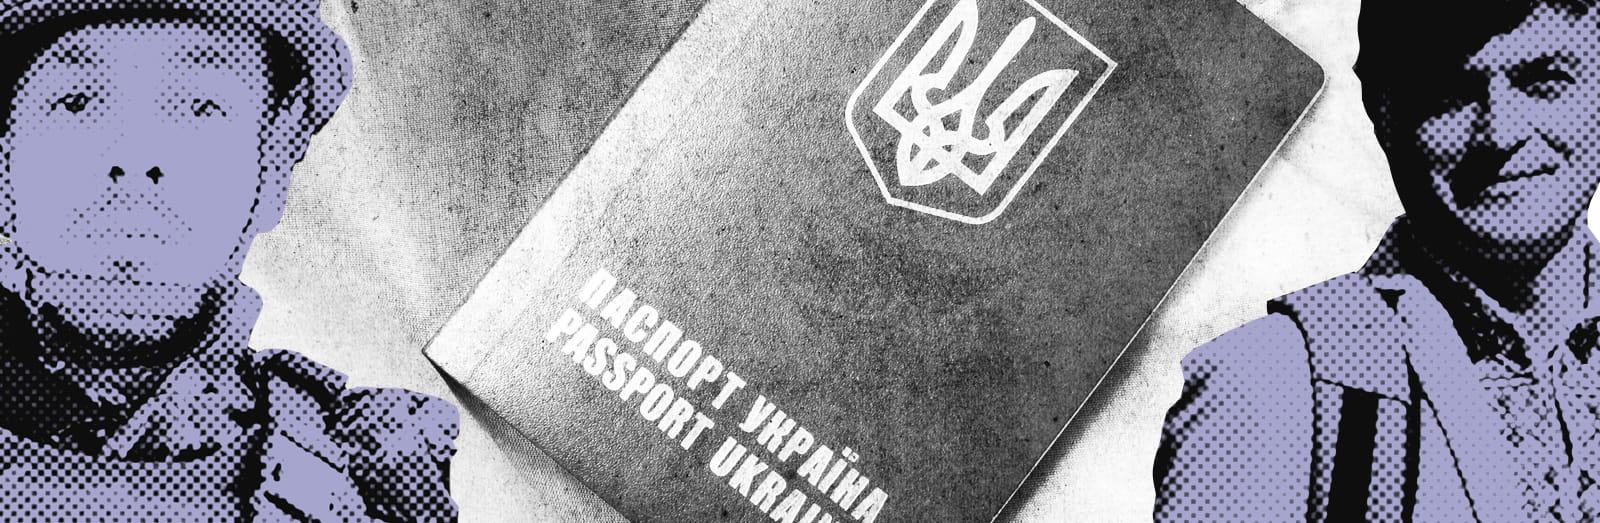 Я отдал за Украину пять литров крови. Истории борьбы за паспорт с тризубом